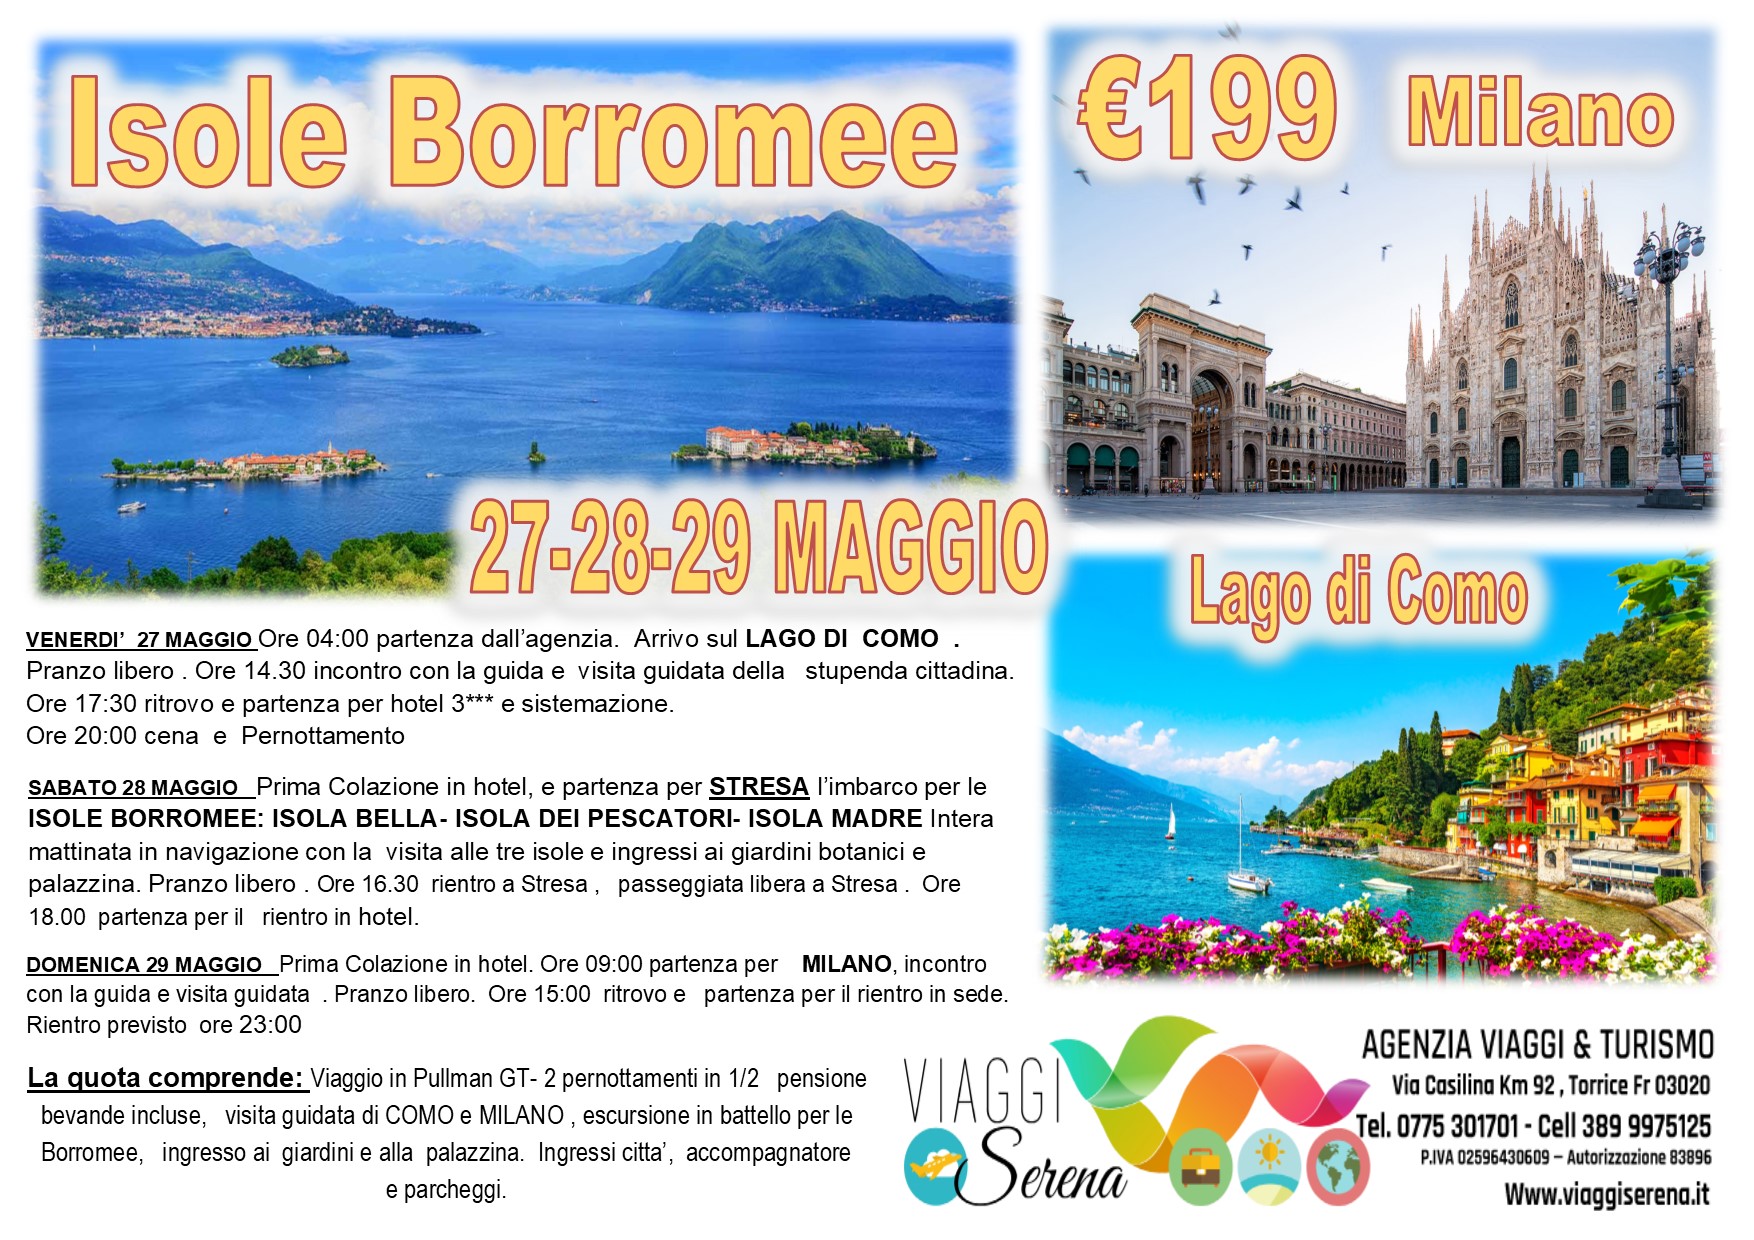 Viaggi di Gruppo: Isole BORROMEE, Como & Milano 27-28-29 Maggio € 199,00